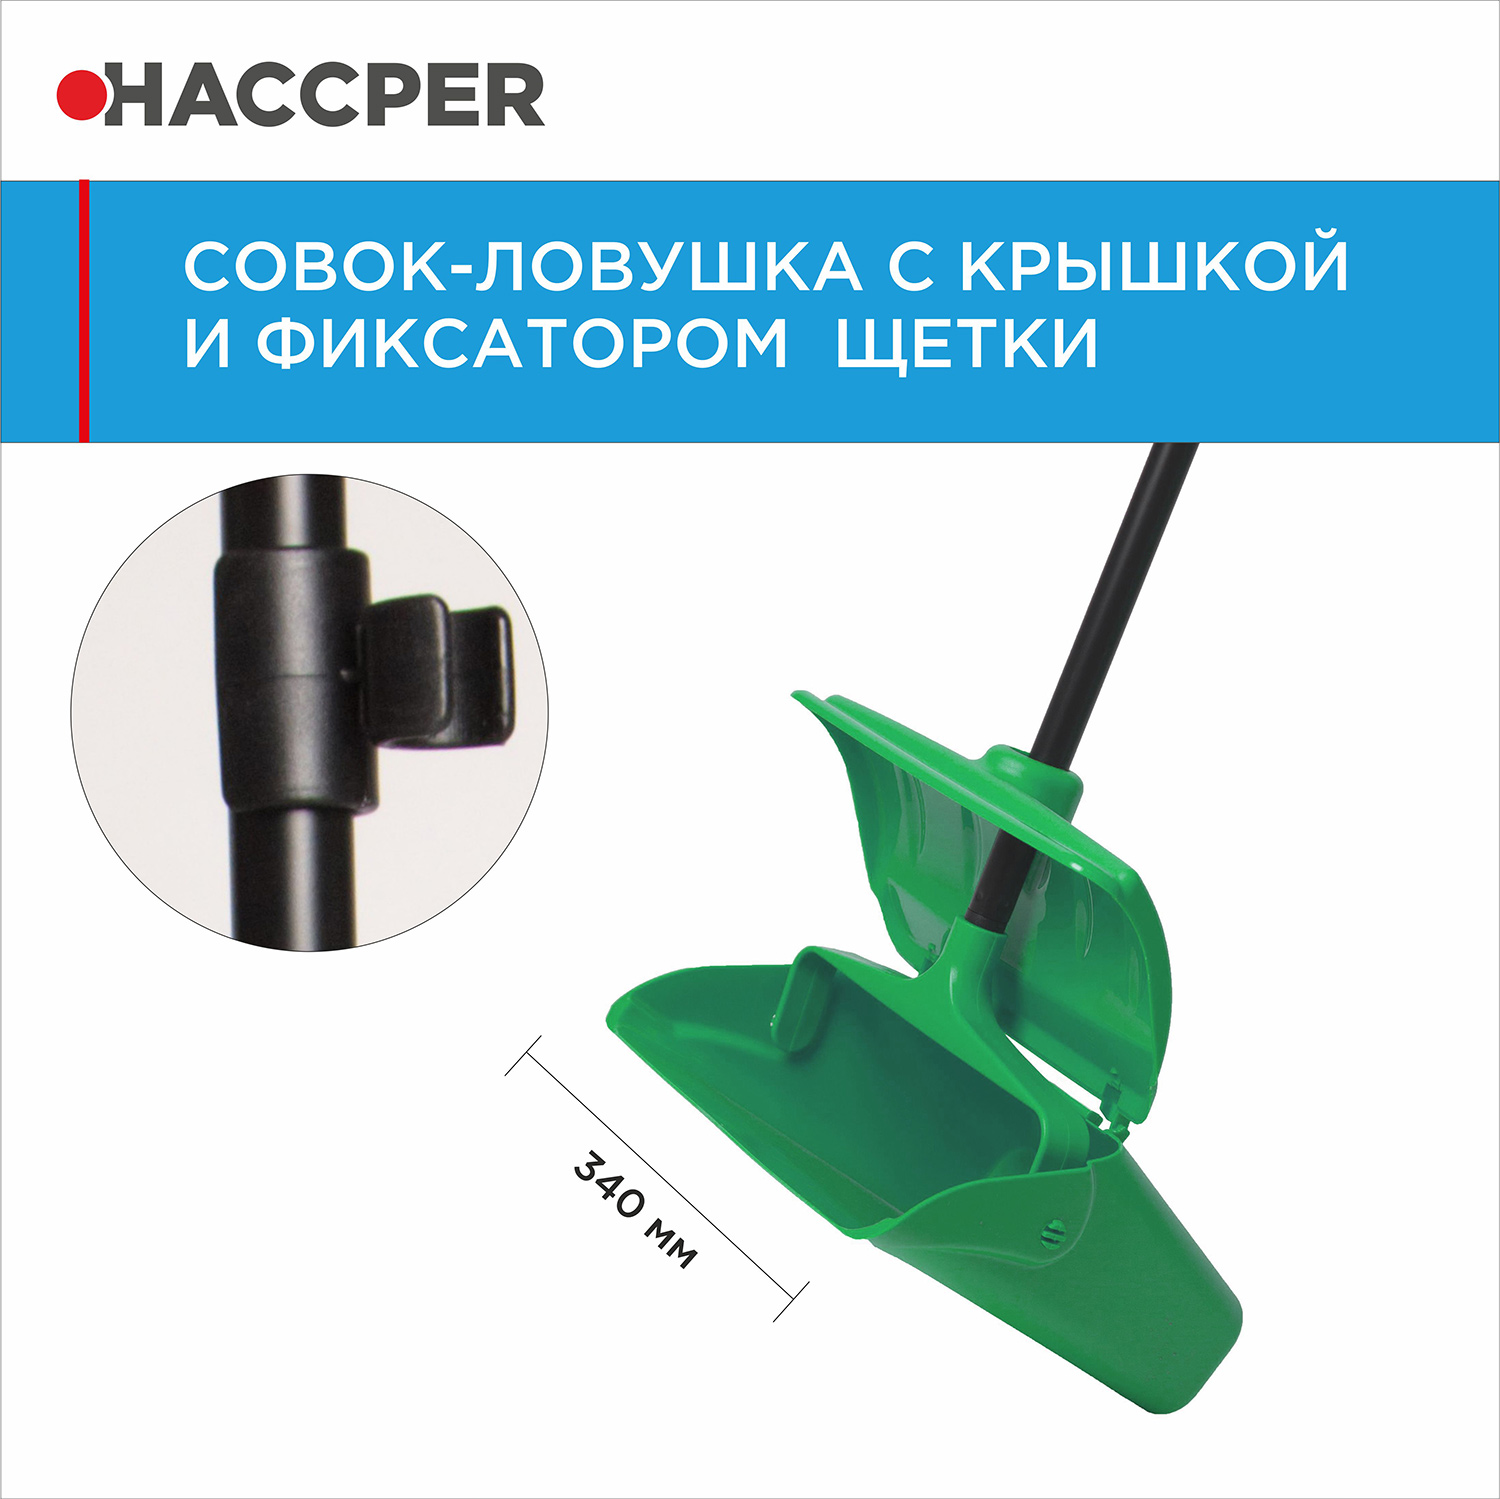 Совок-ловушка HACCPER с крышкой и фиксатором щетки, зеленый